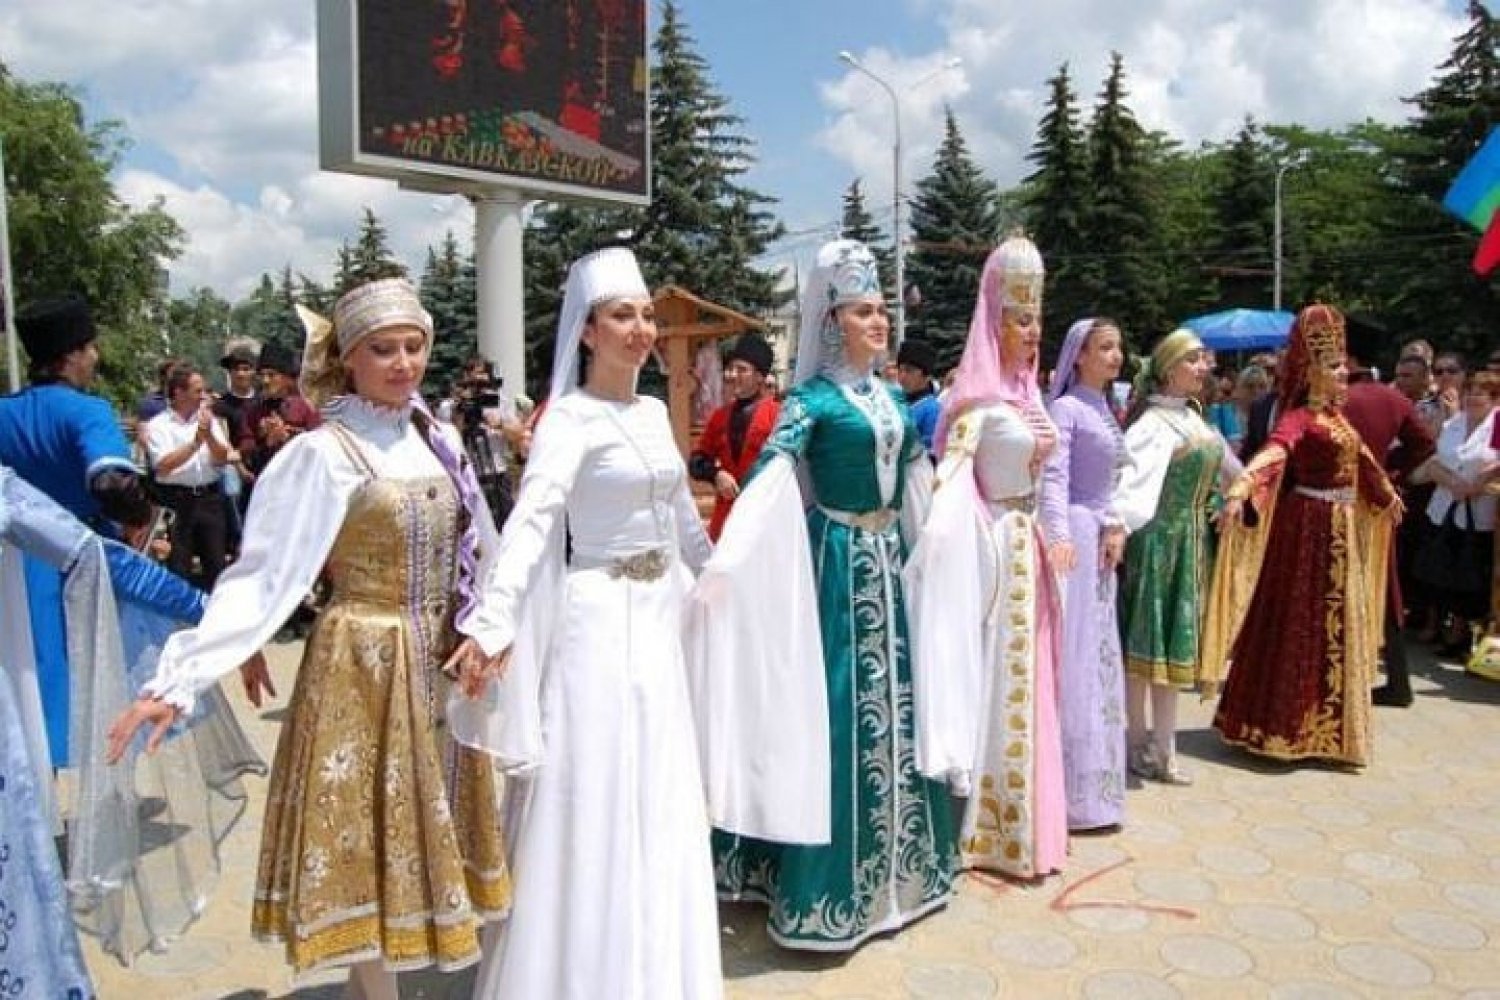 Численность черкесского населения